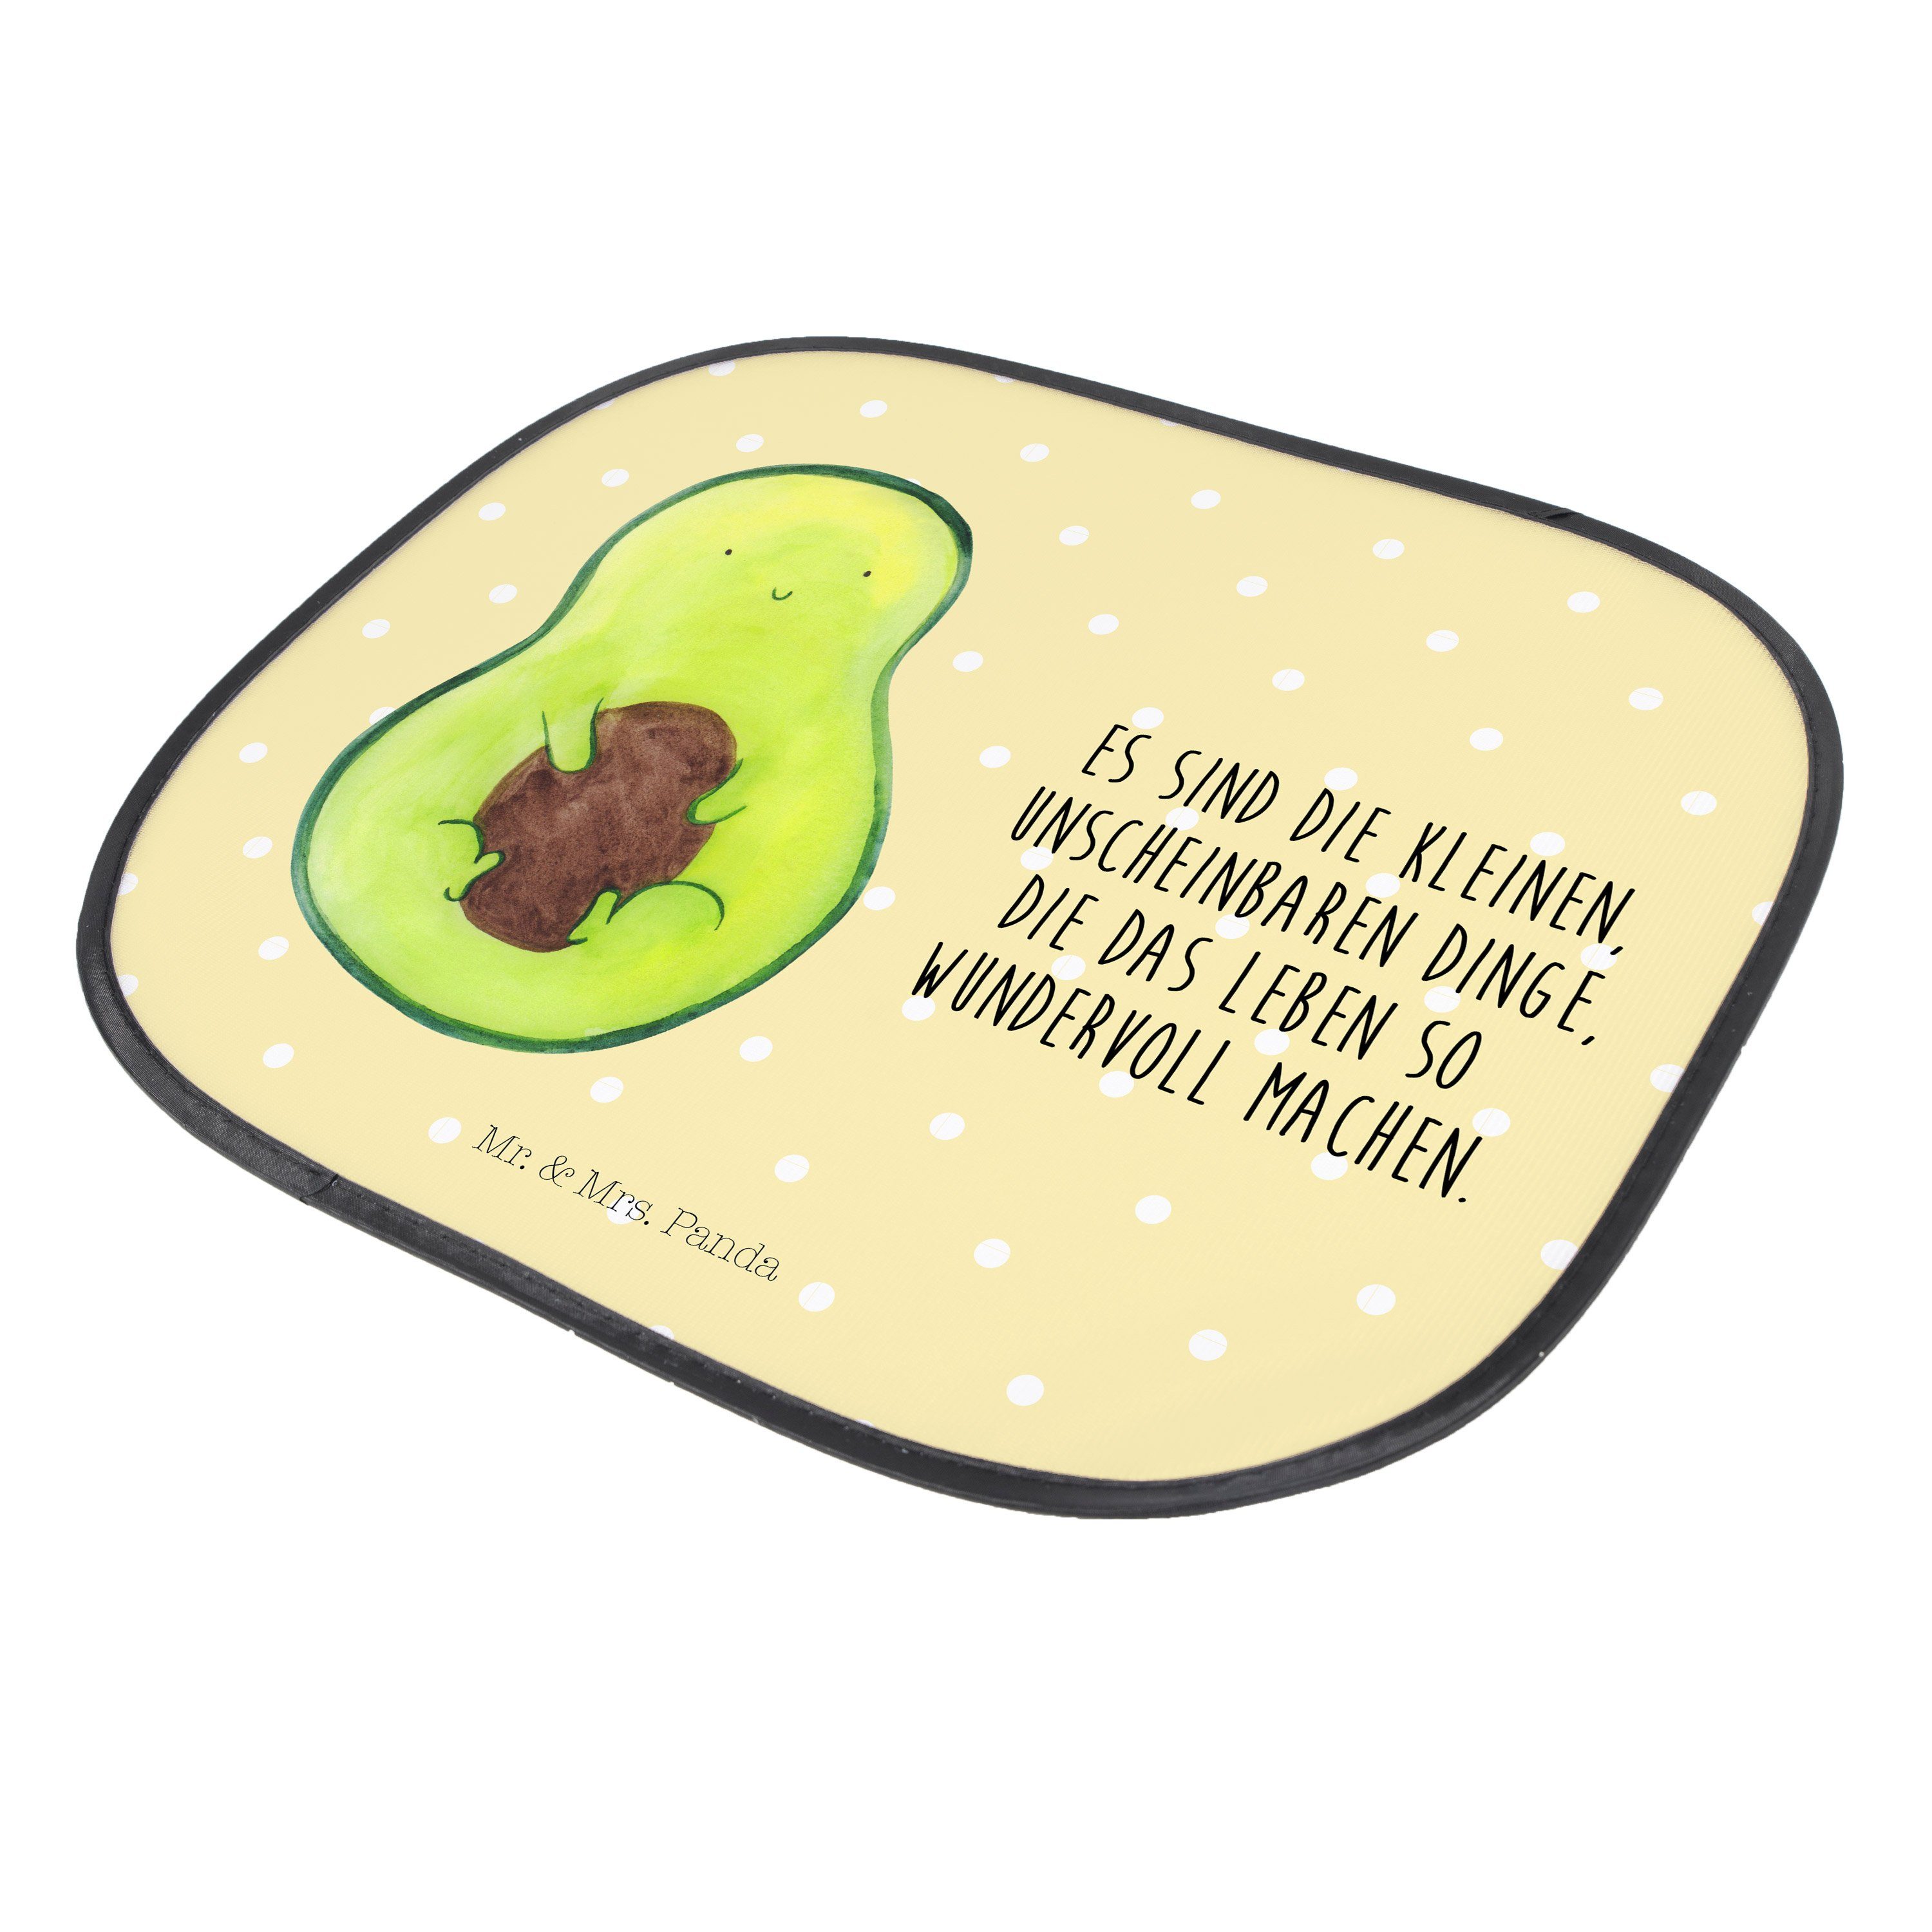 Sonnenschutz Avocado mit Kern - Geschenk, Gelb - Mr. Mrs. Panda, & Sonnenblende, Seidenmatt glücklich, Pastell